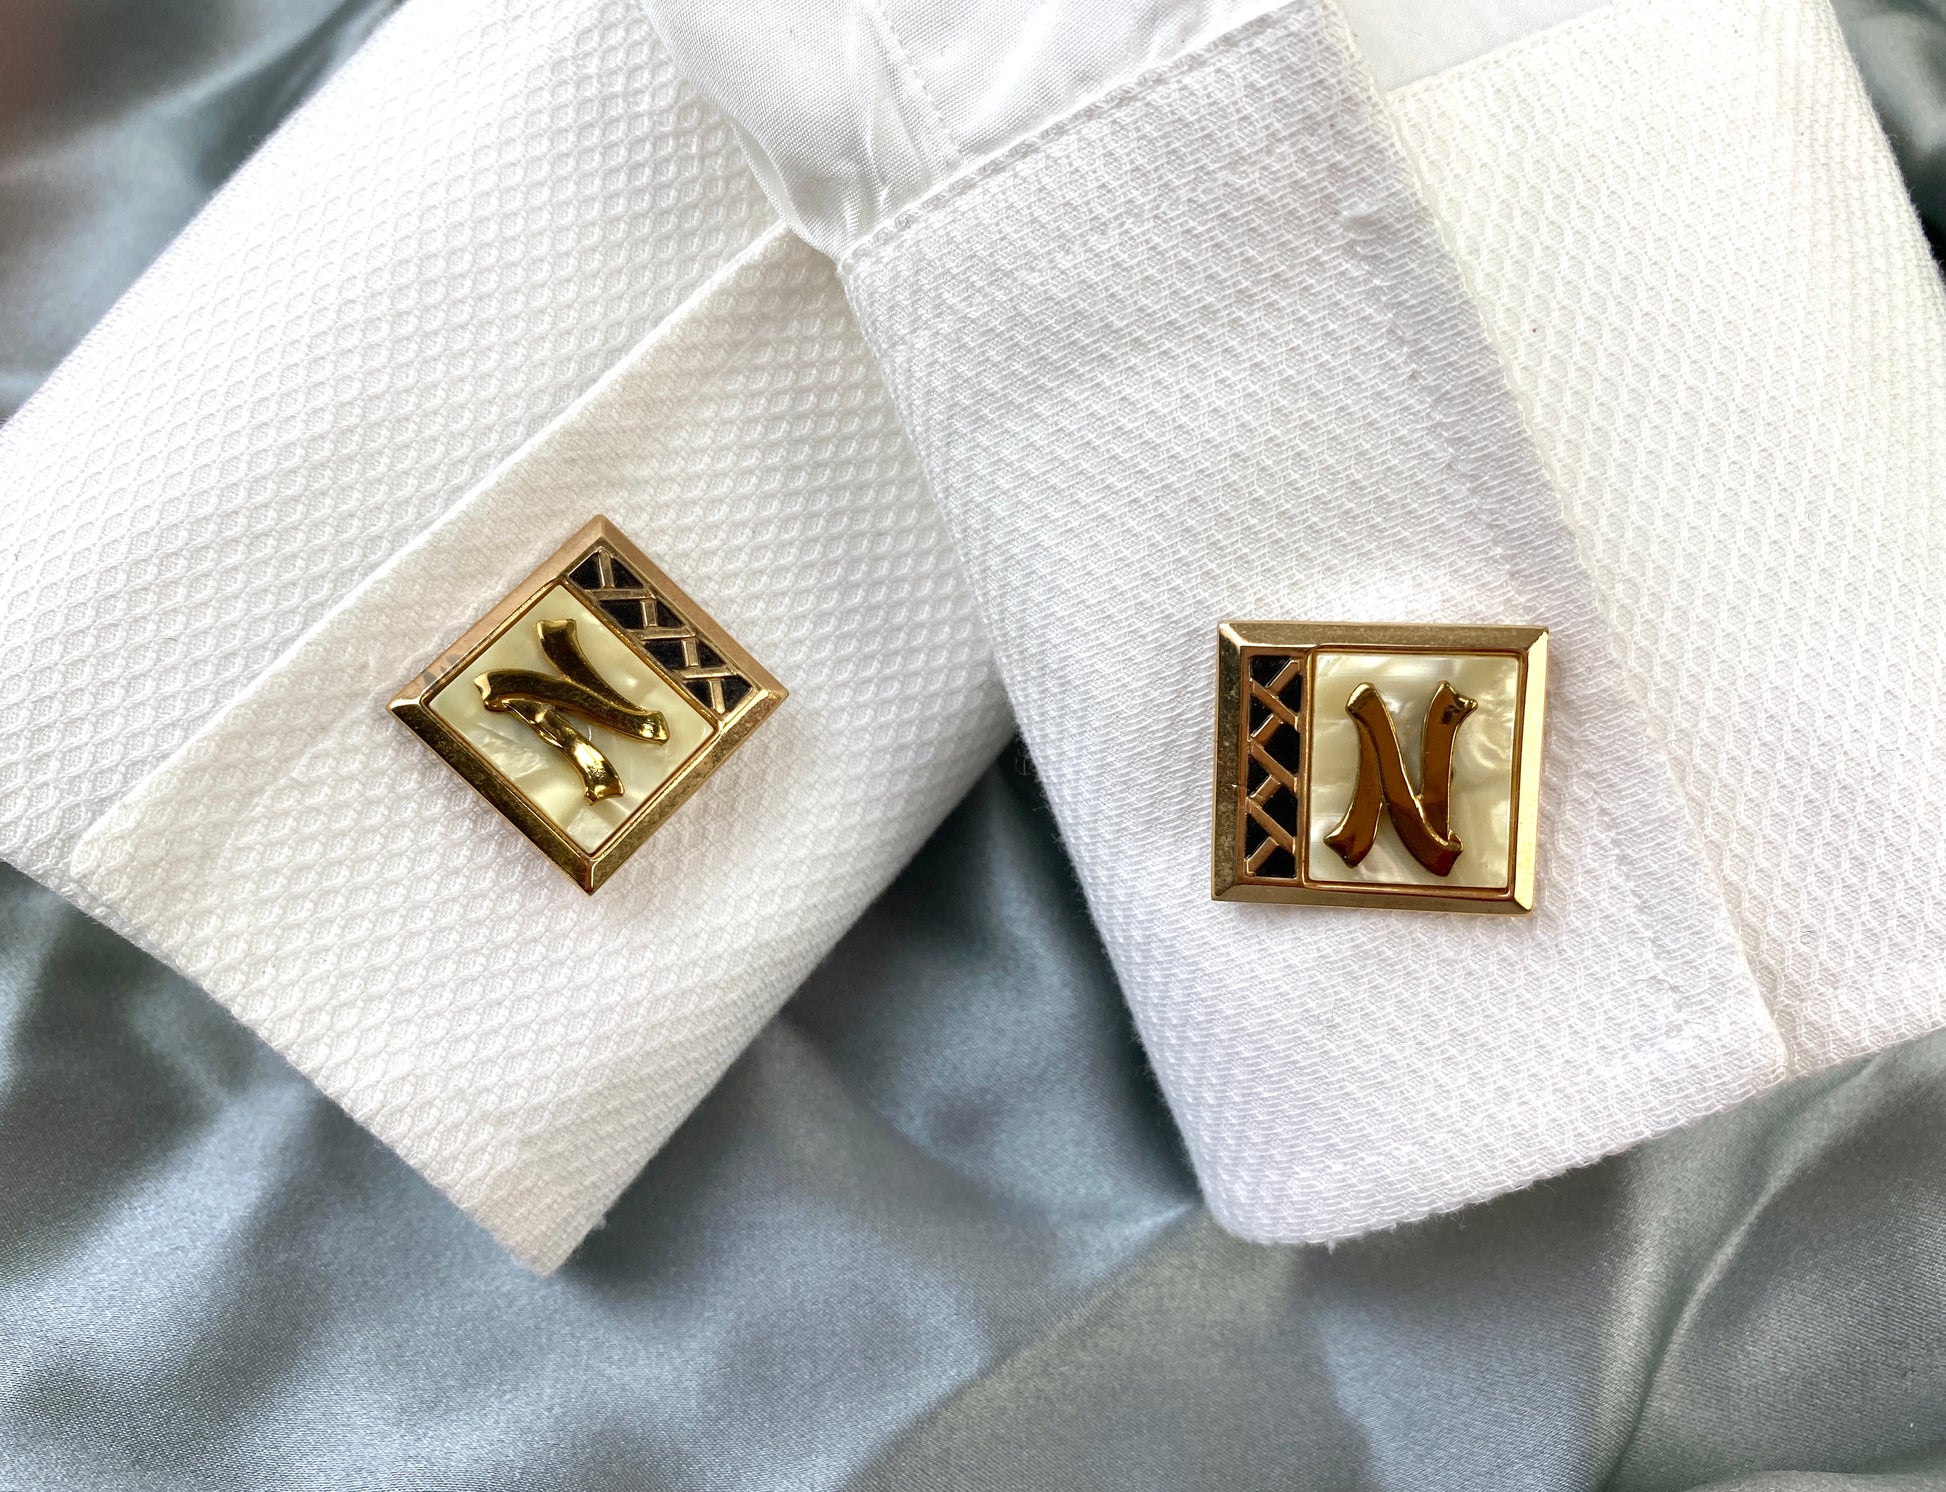 Vintage Brass Cufflinks, Tie Bar & Buckle 3 Piece Set, 'N' Monogram